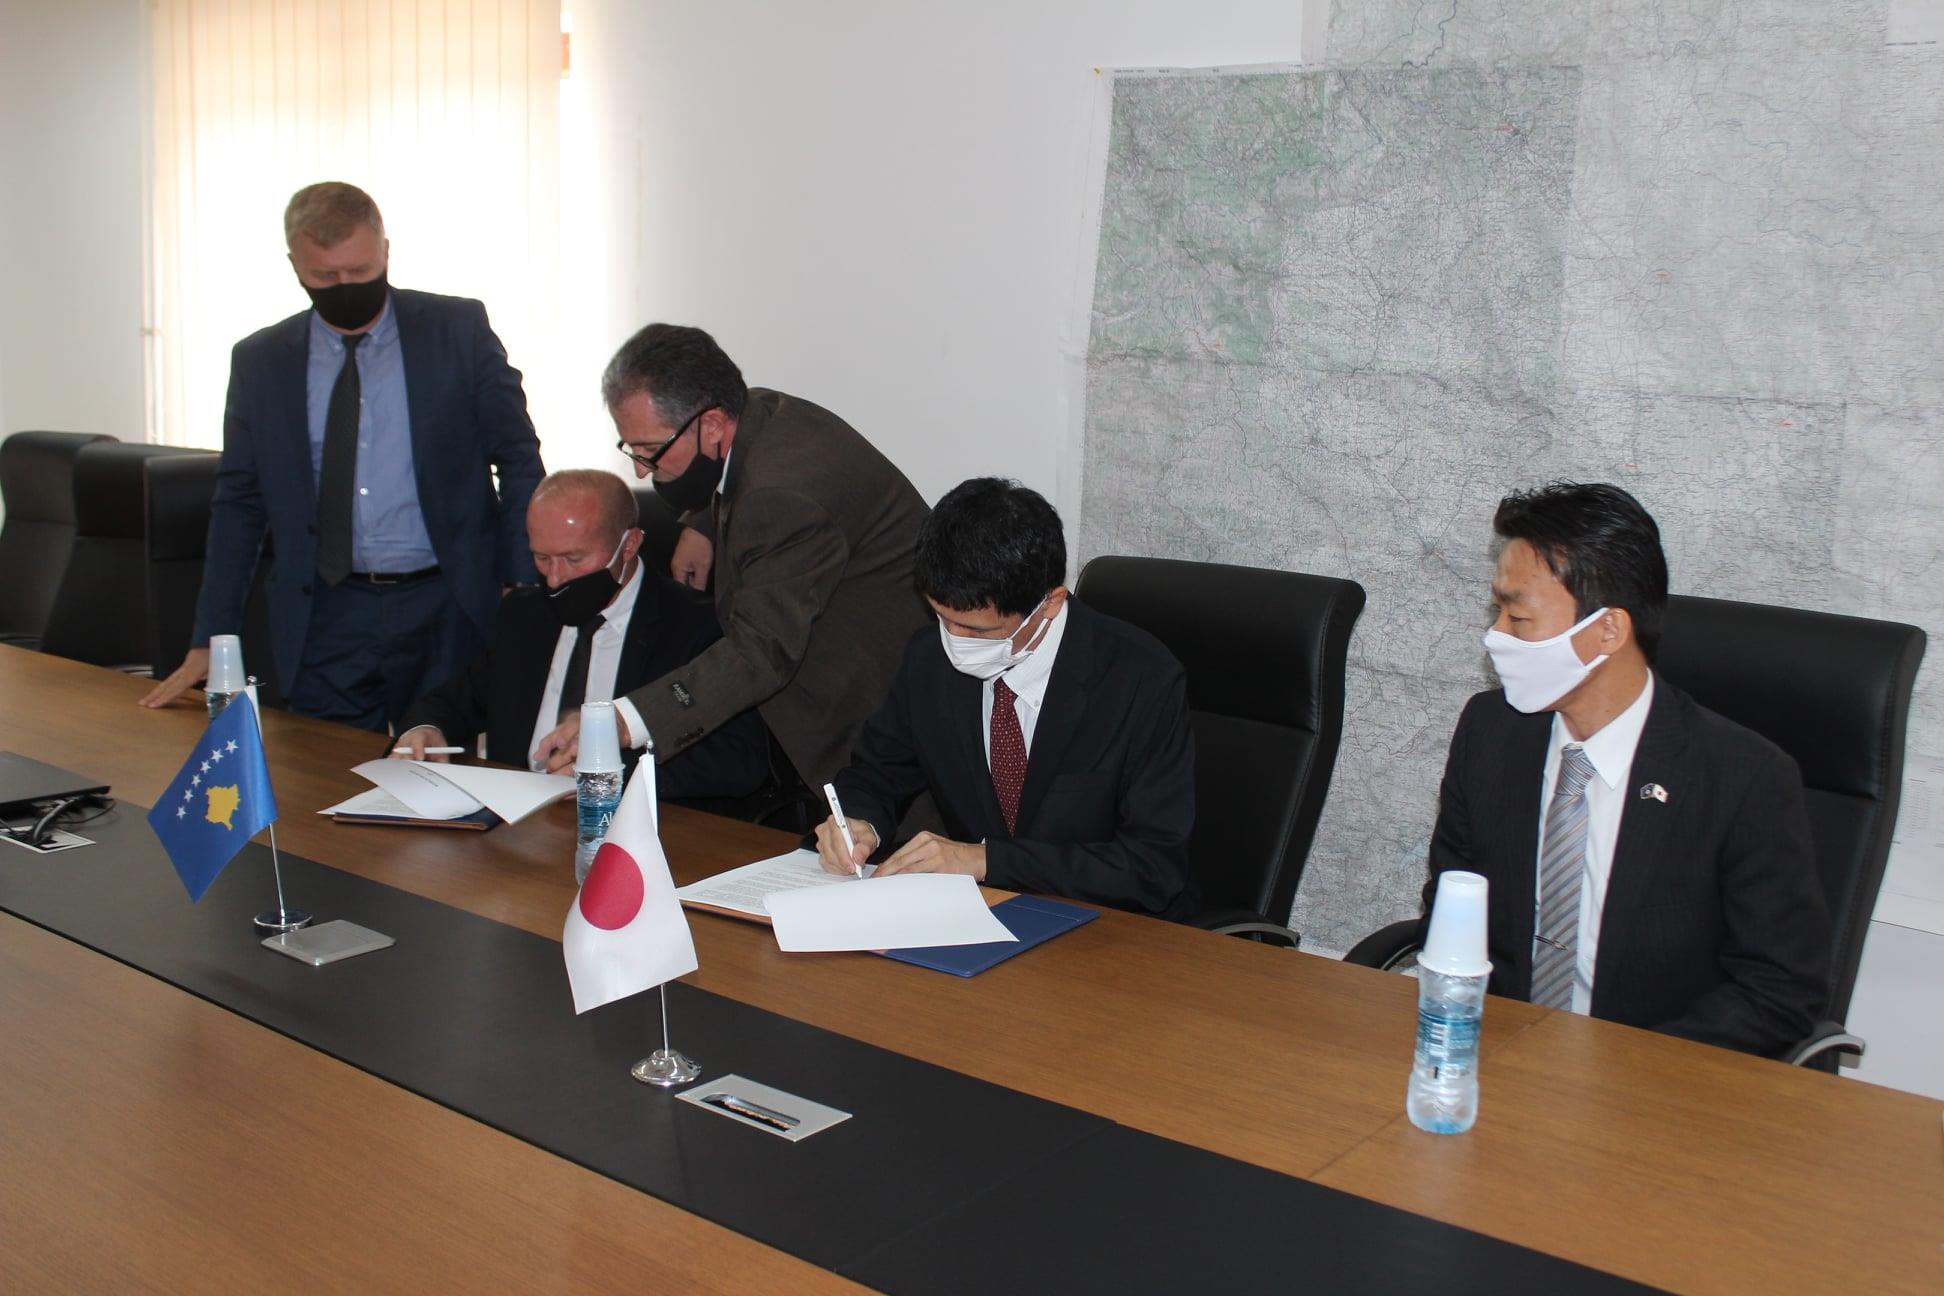 Nënshkruhet marrëveshja e bashkëpunimit ne mes AME-së dhe JICA Japoneze.